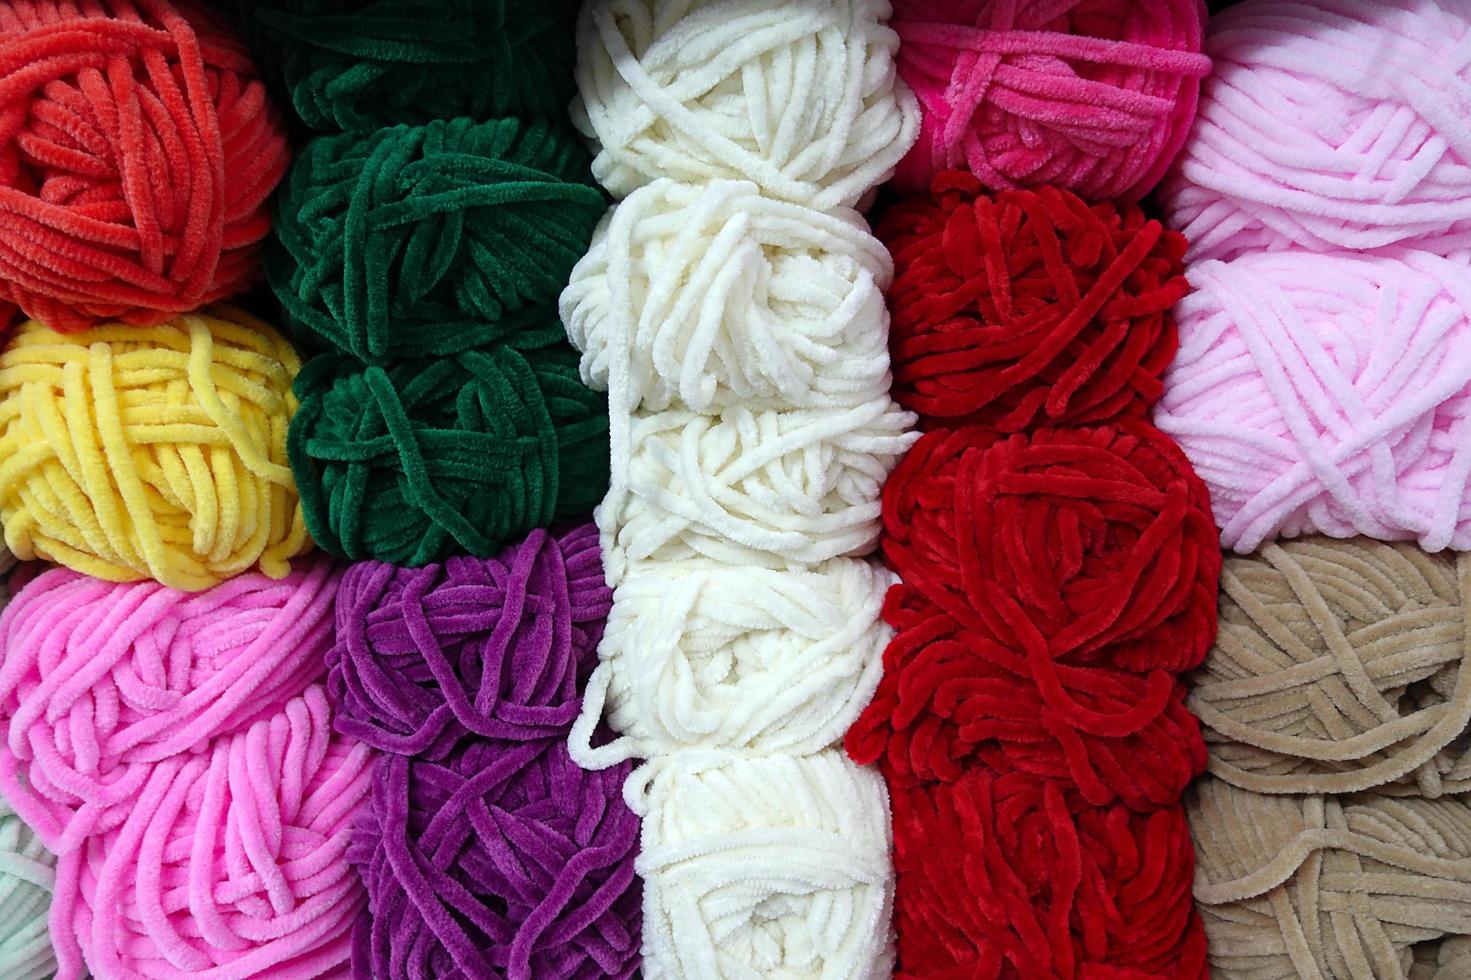 rotoli di tessuto industriale in materiale tessile colorato in cotone foto